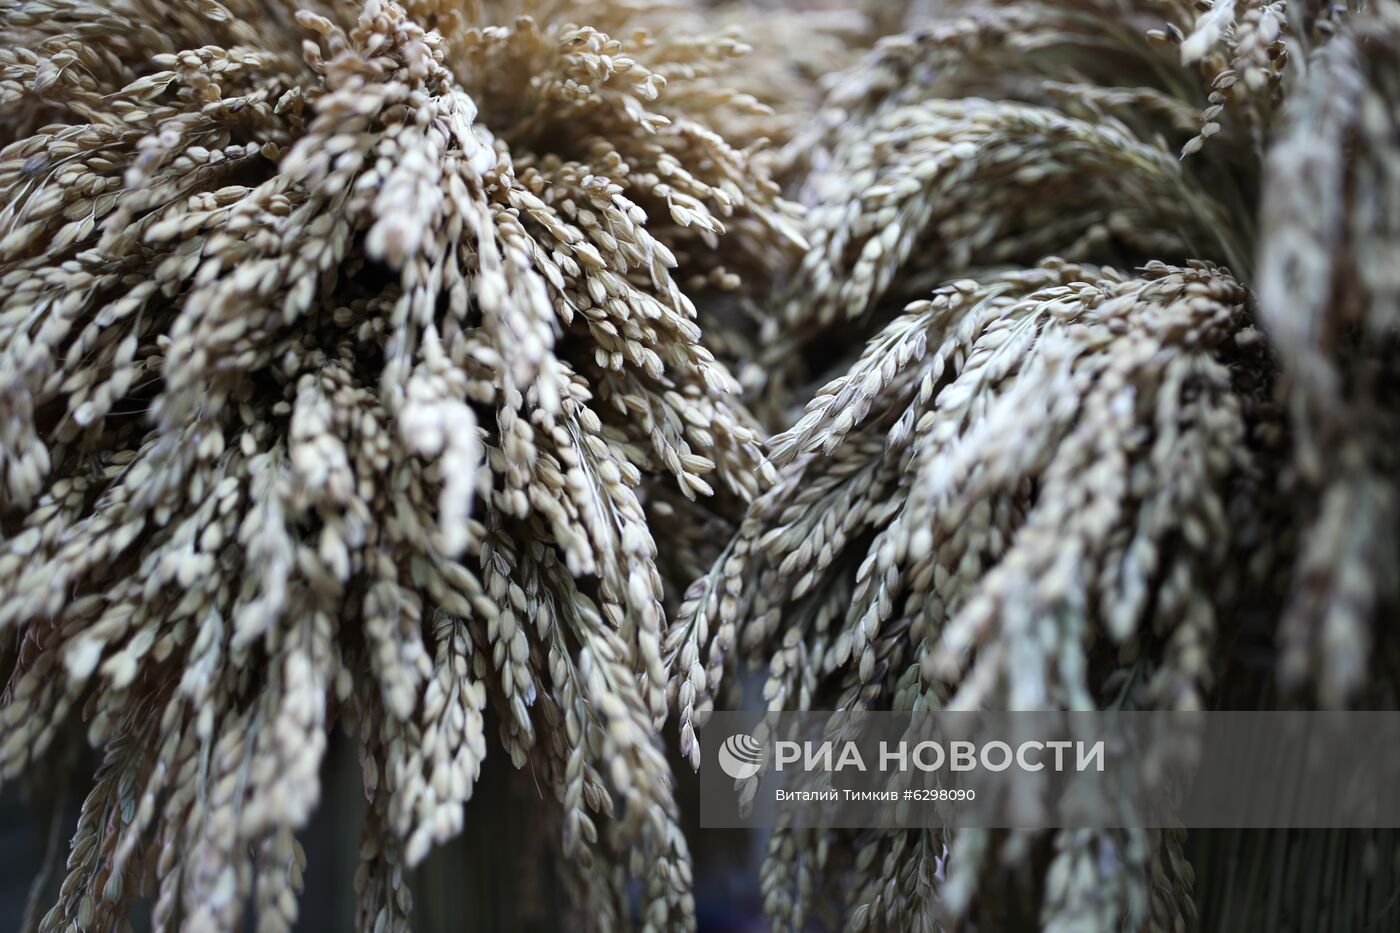 Федеральный научный центр риса в Краснодаре